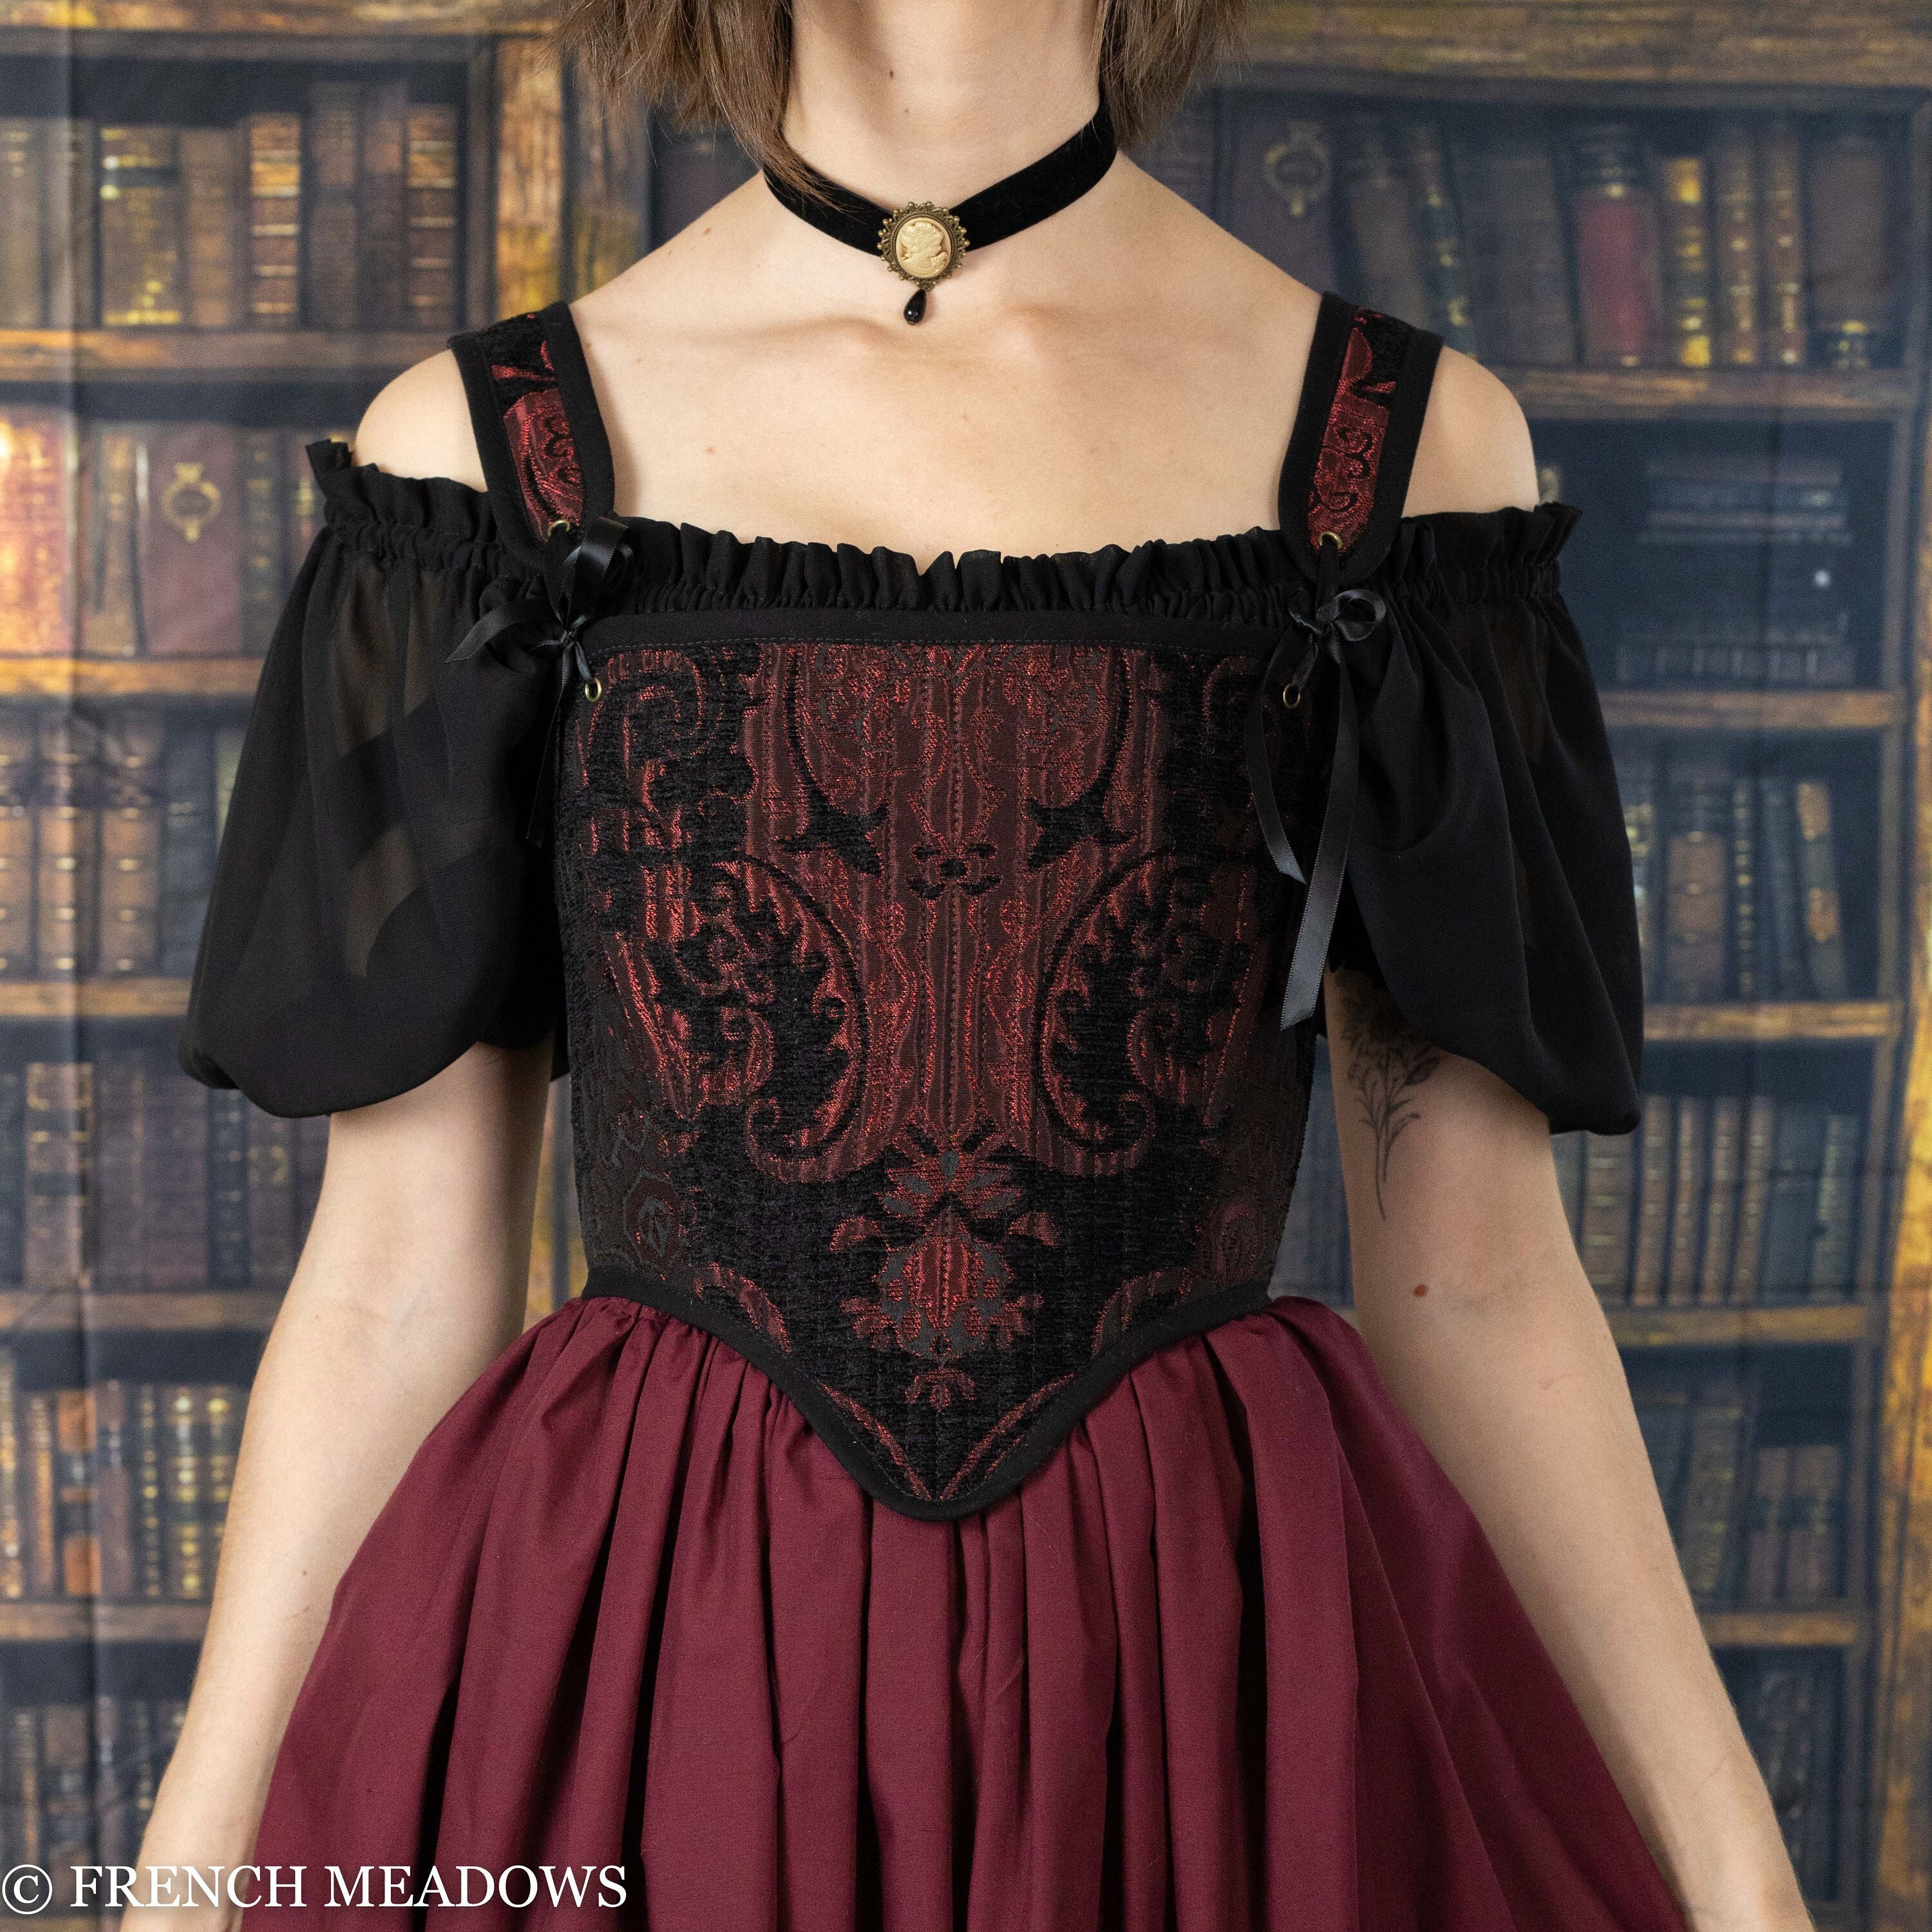 Corset Boned Bodice Victorian Bustier Jacquard Lace Renaissance Gothic